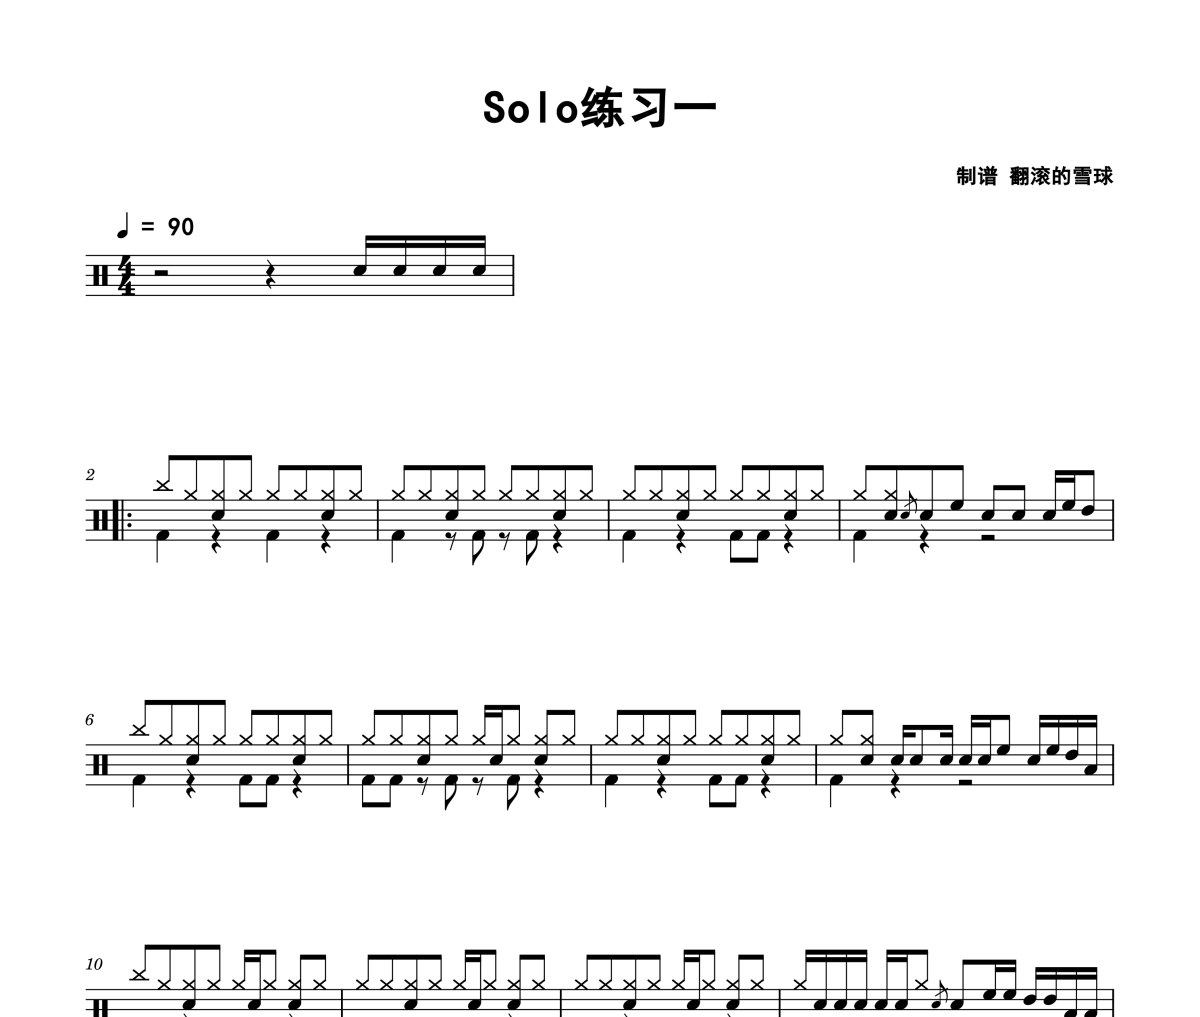 Solo1鼓谱 练习曲-Solo1架子鼓爵士鼓谱 翻滚的雪球制谱